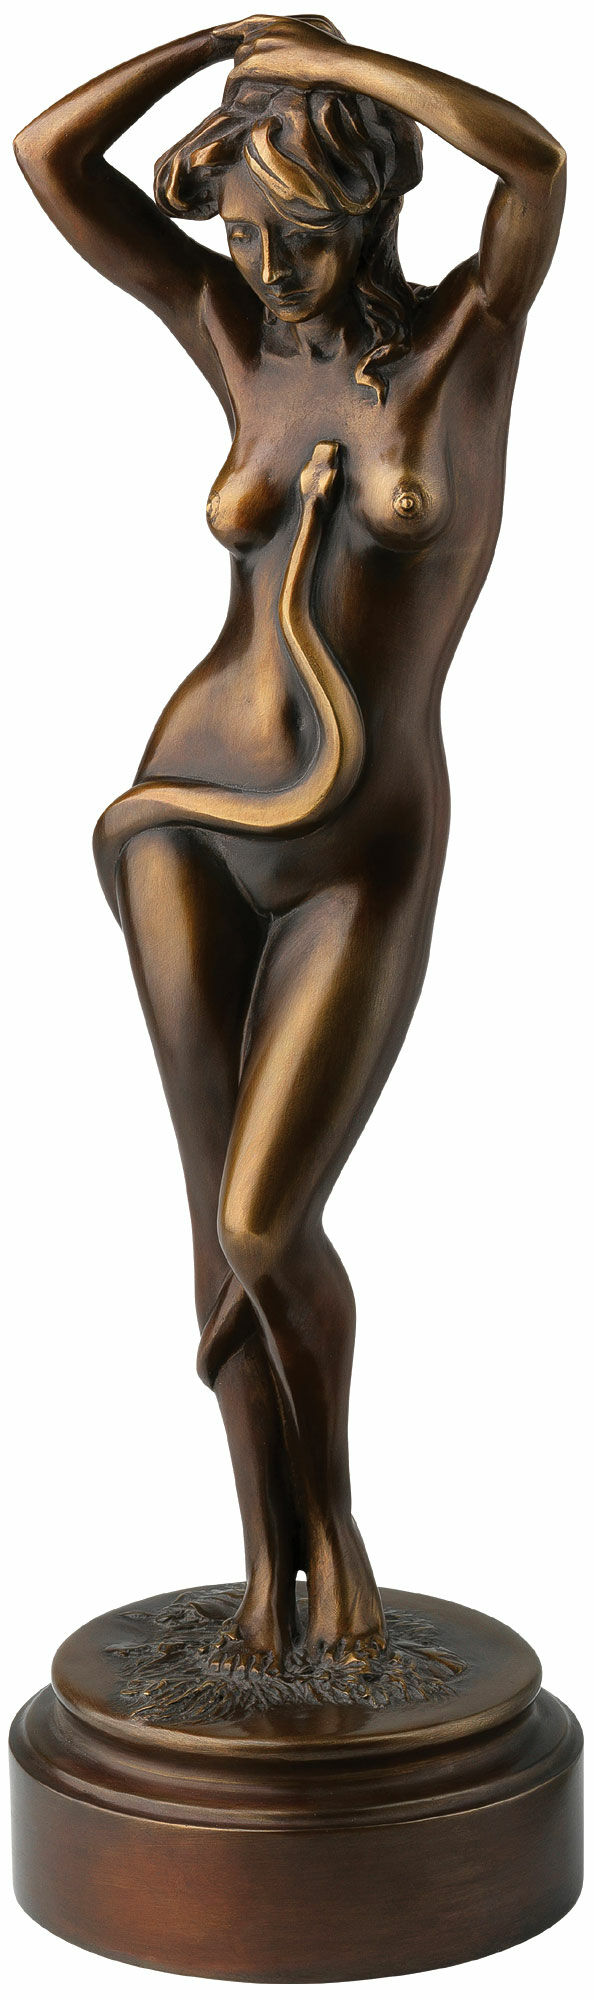 Skulptur "Eva", bronzeversion von Thomas Schöne